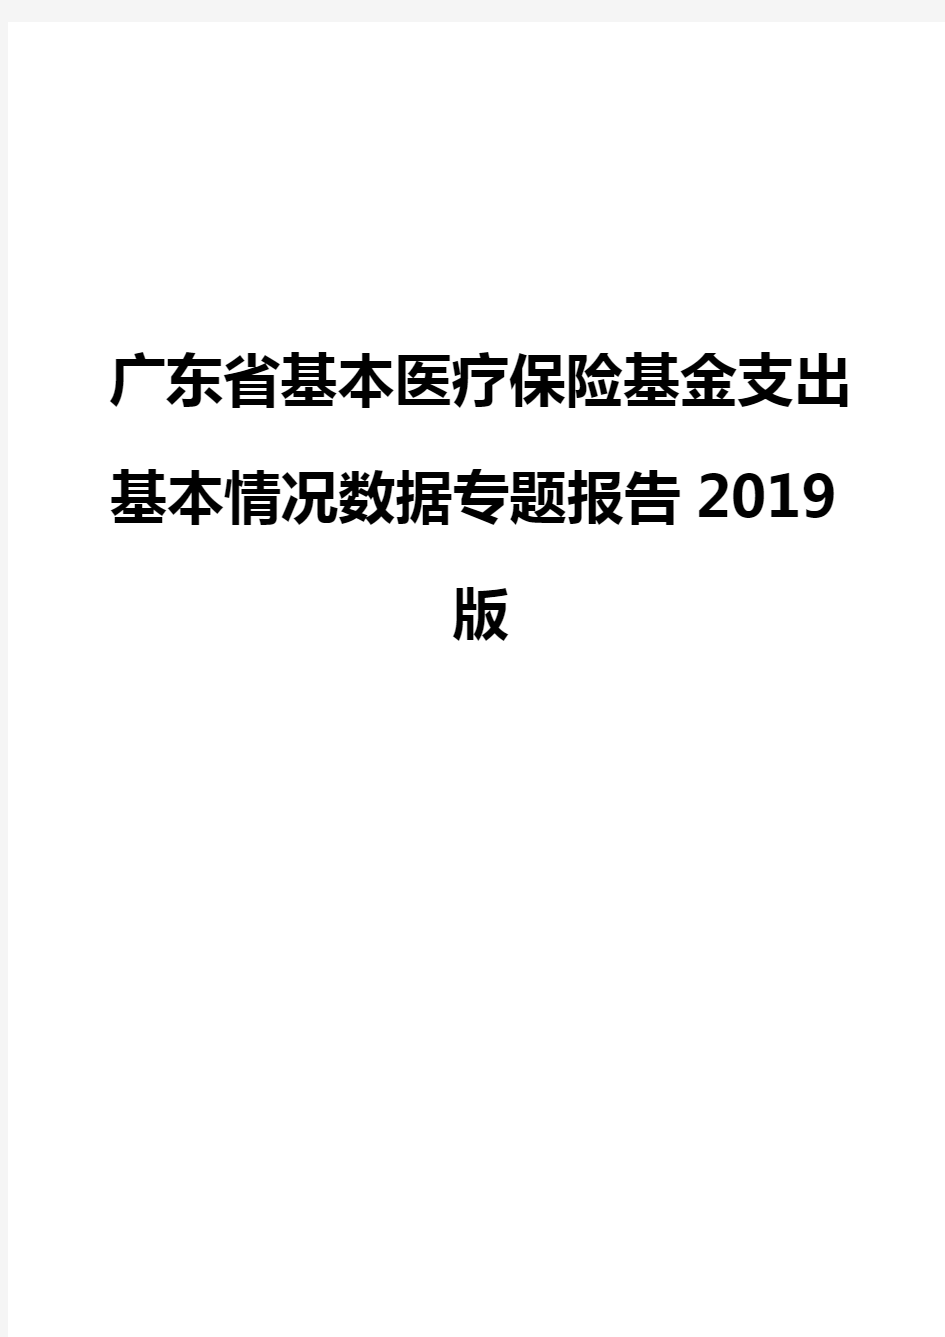 广东省基本医疗保险基金支出基本情况数据专题报告2019版